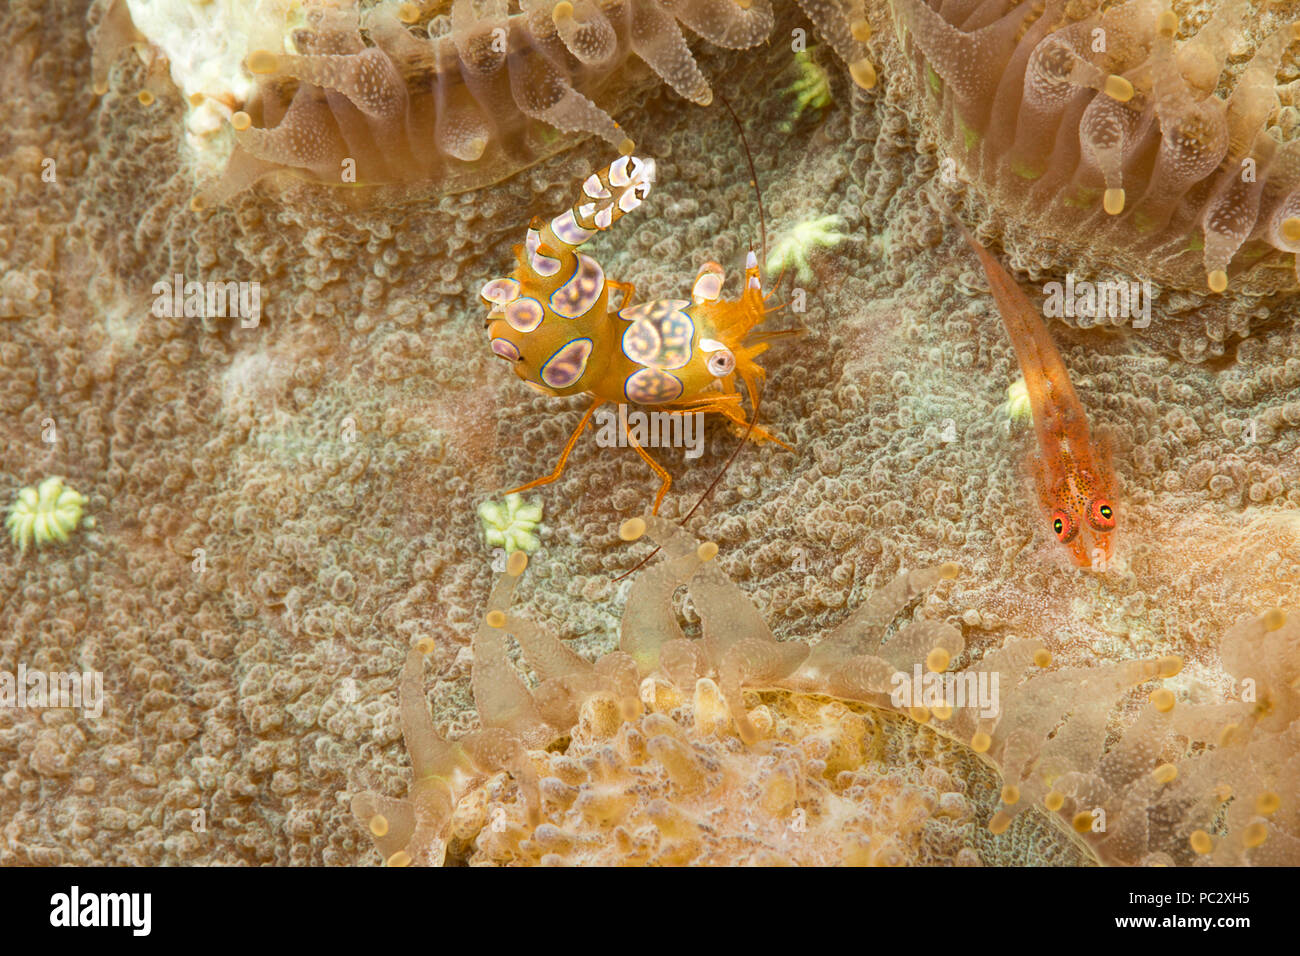 Uno sguardo più da vicino a un corallo ghiozzo, Bryaninops loki e uno squat gamberetti, Thor amboinensis, tra i polipi di corallo, Filippine. Foto Stock